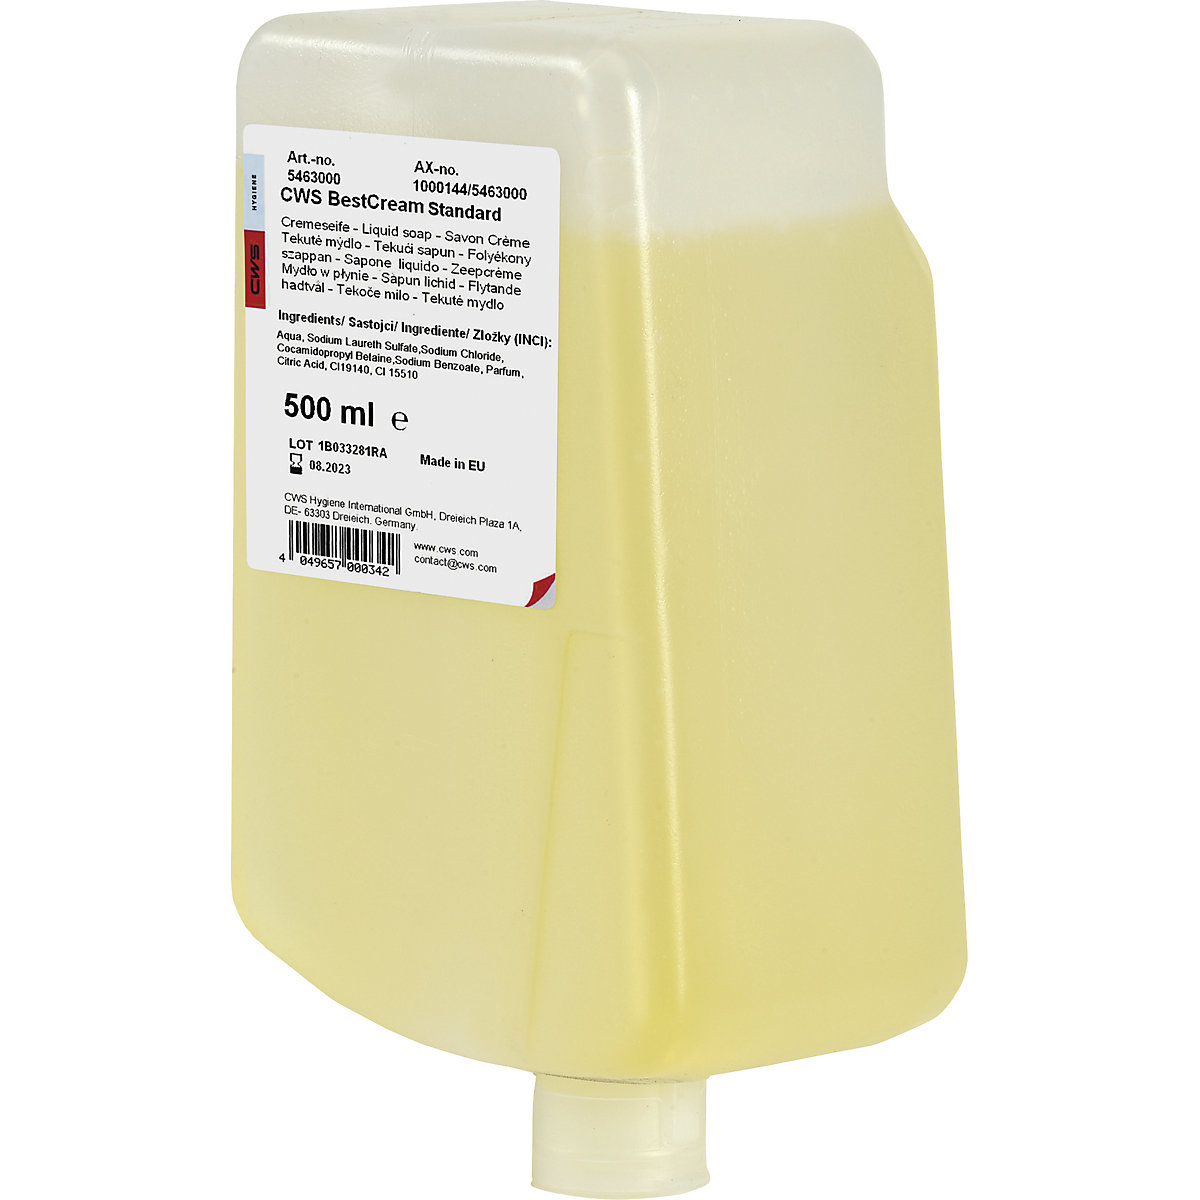 Best Cream liquid soap - CWS